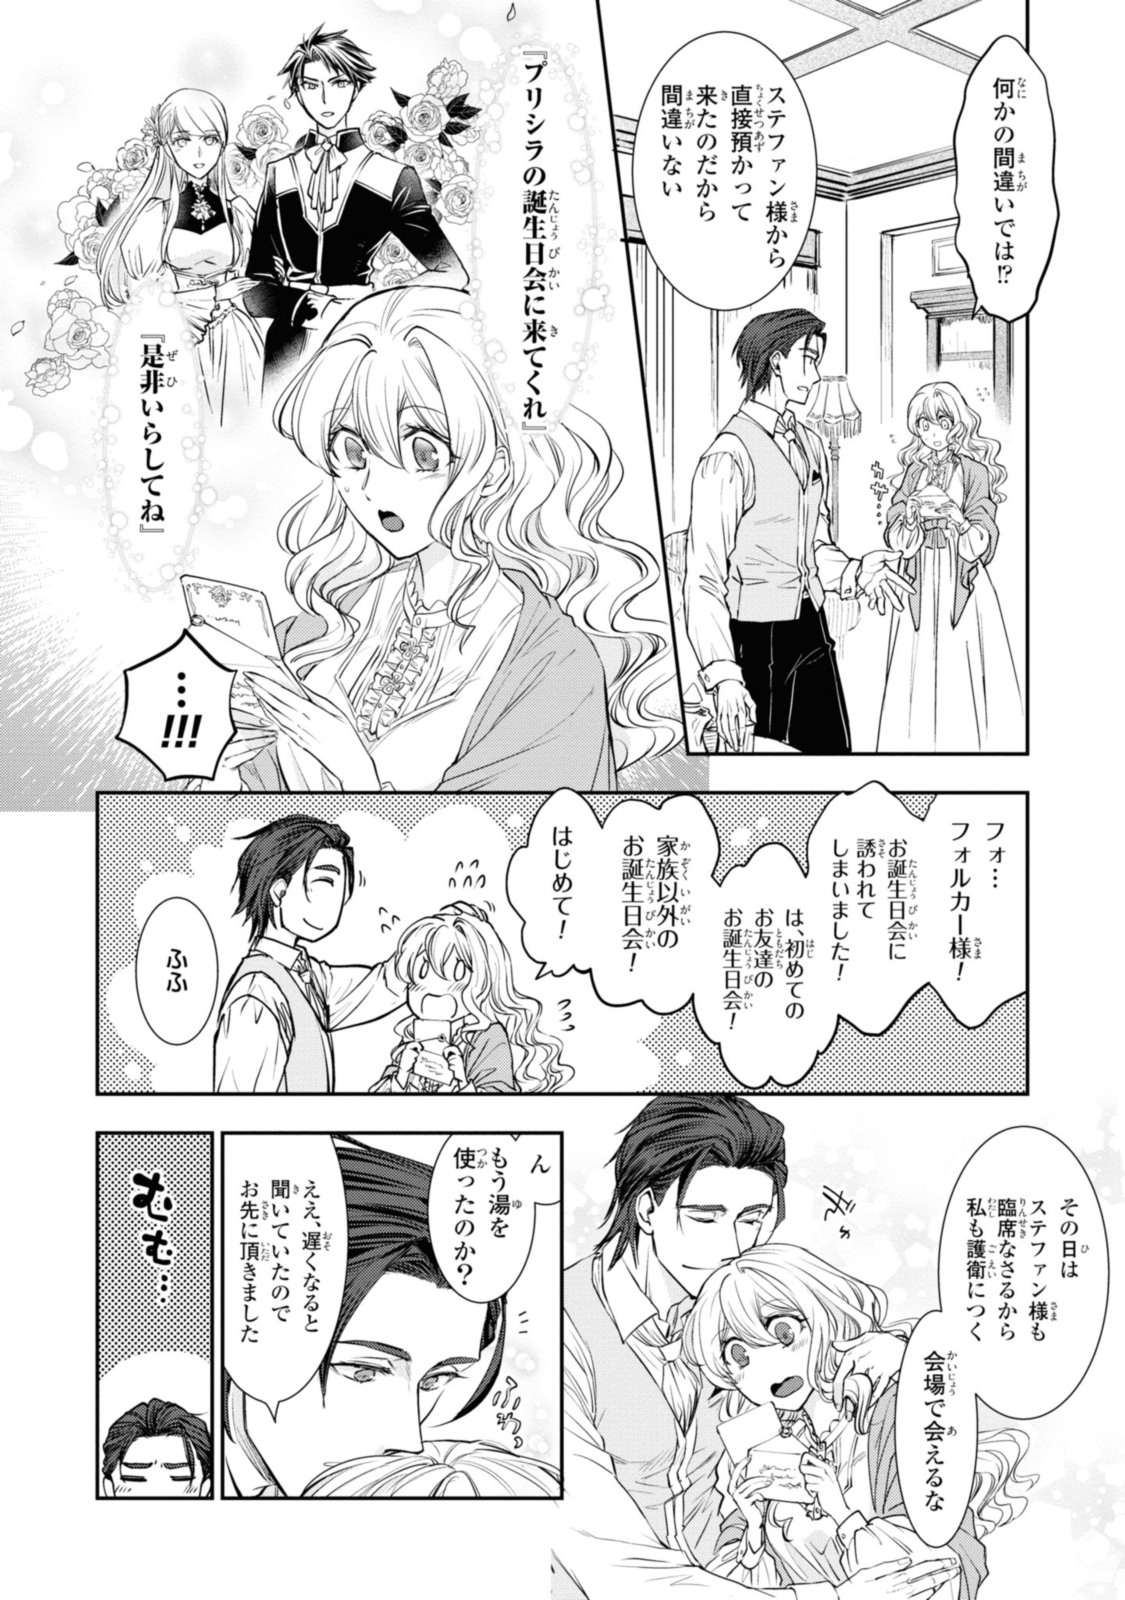 Sakkon no Cinderella wa Kutsu wo Otosanai. - Chapter 13.2 - Page 1